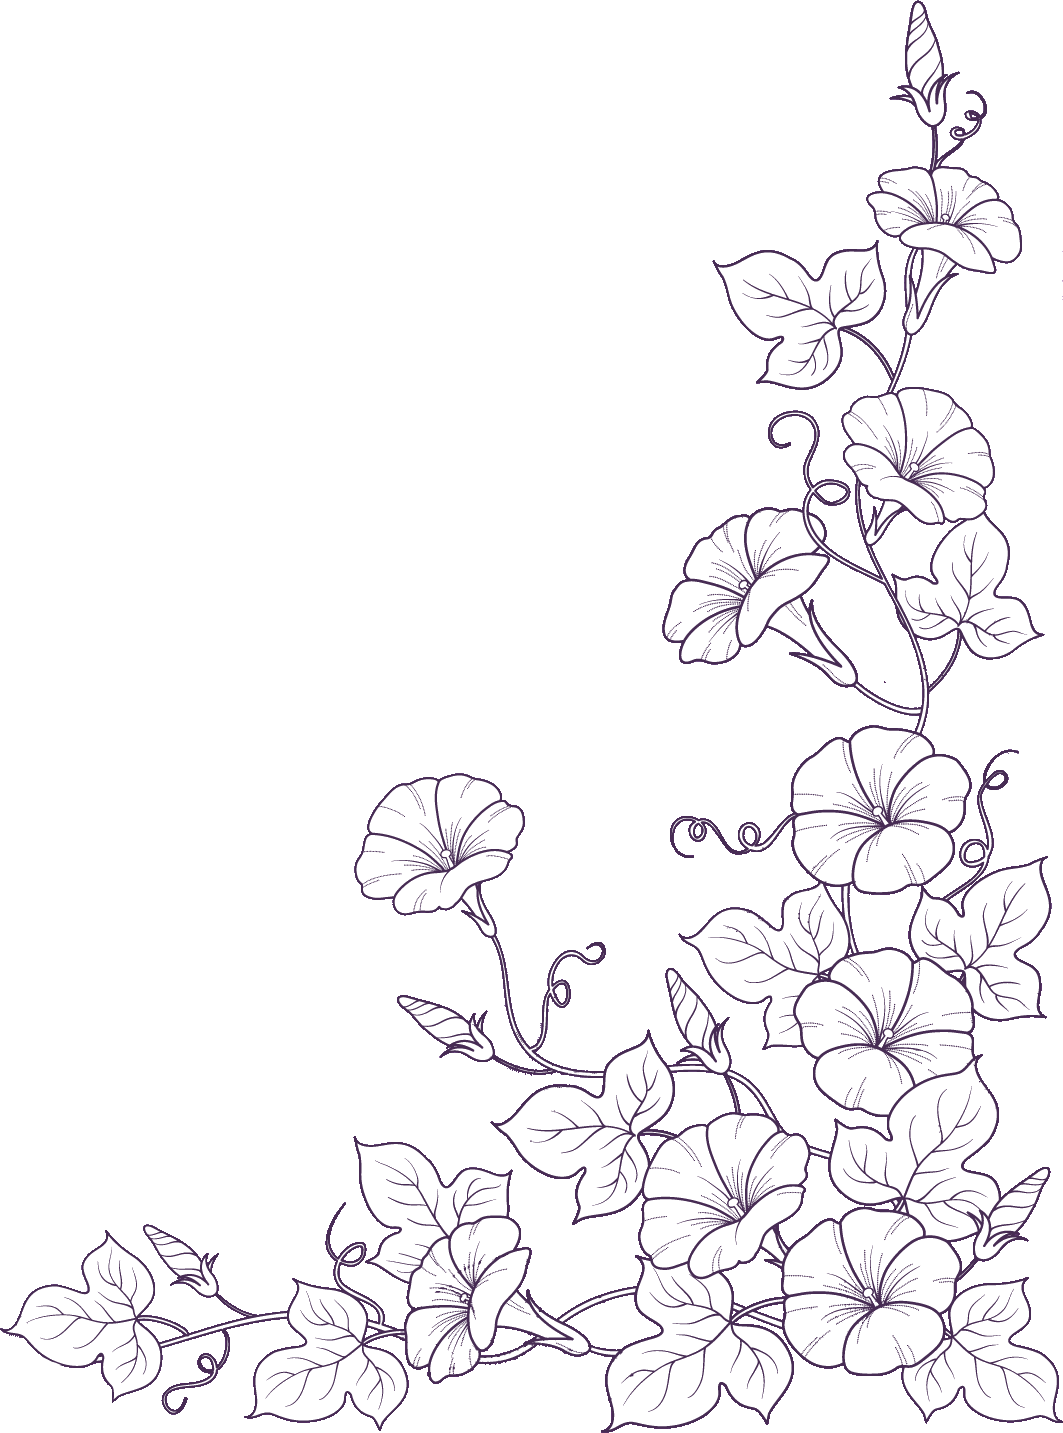 リアルな花のイラスト フリー素材 白黒 モノクロno 10 アサガオ 白